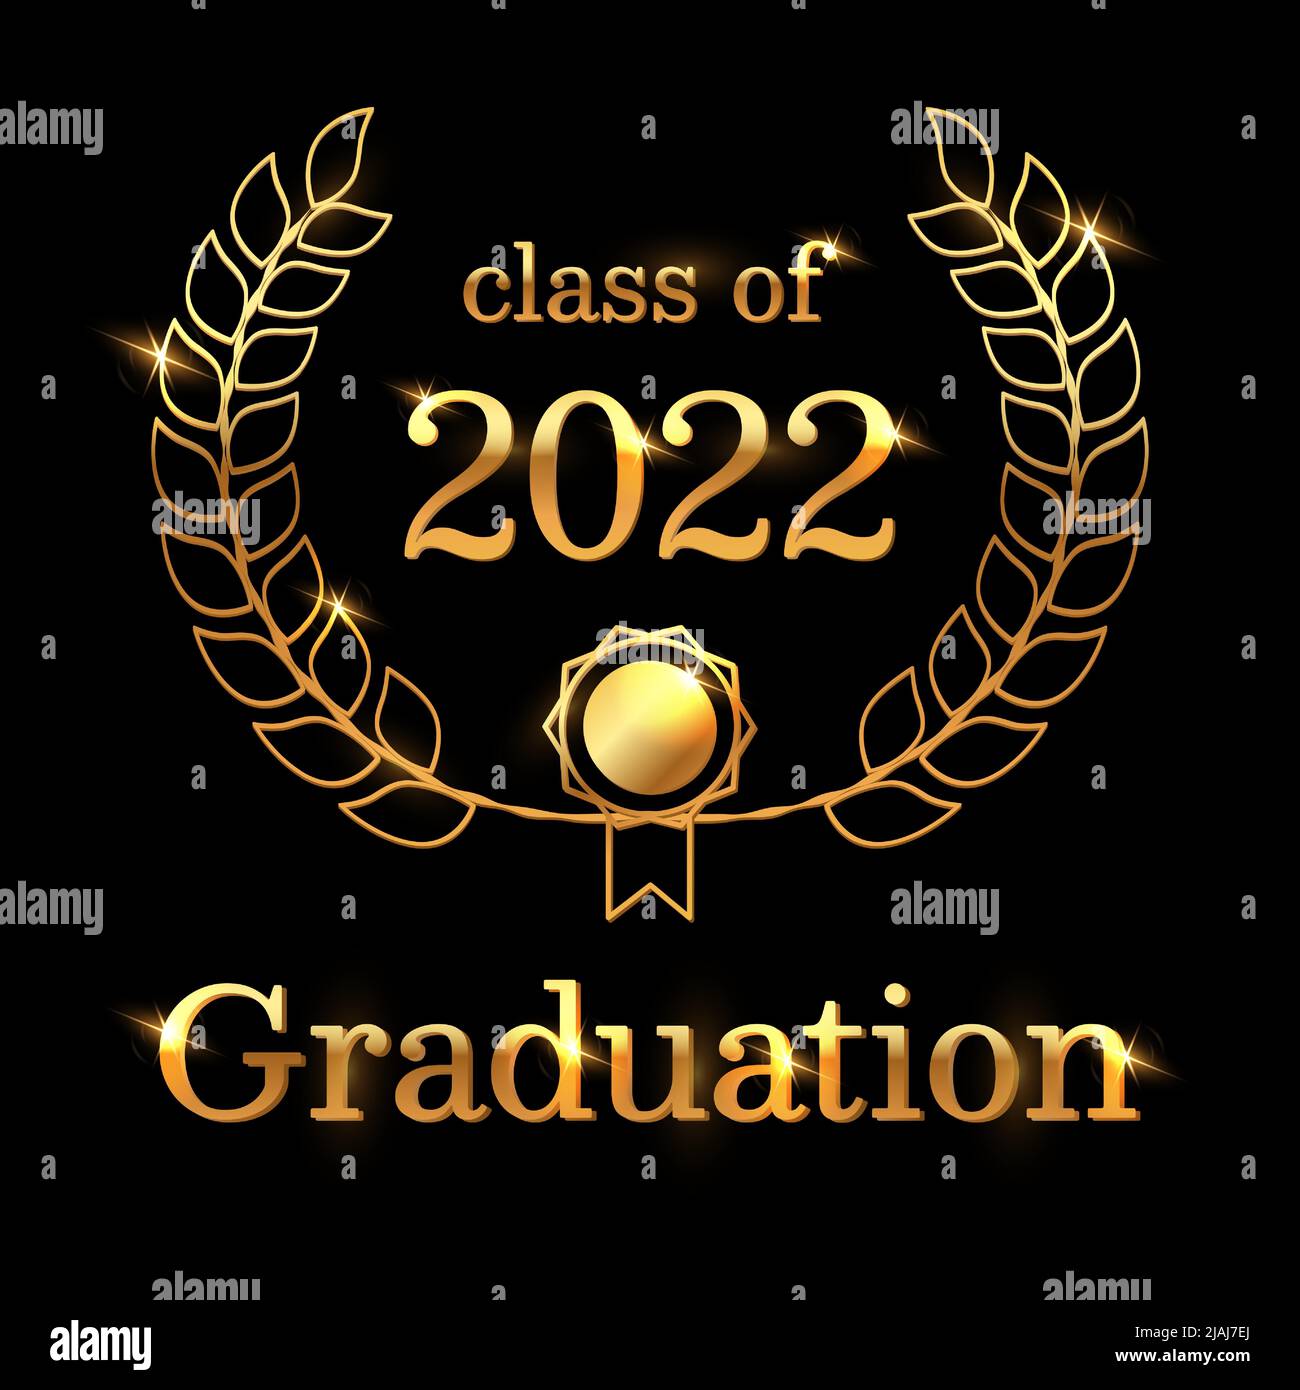 Elegante Klasse von 2022 Graduierung Poster Design. Schwarz und Gold. Glänzende Vektor-Vorlage für Abschlussfeier Einladung, Abschlussfeier oder Grußkarte. Stock Vektor